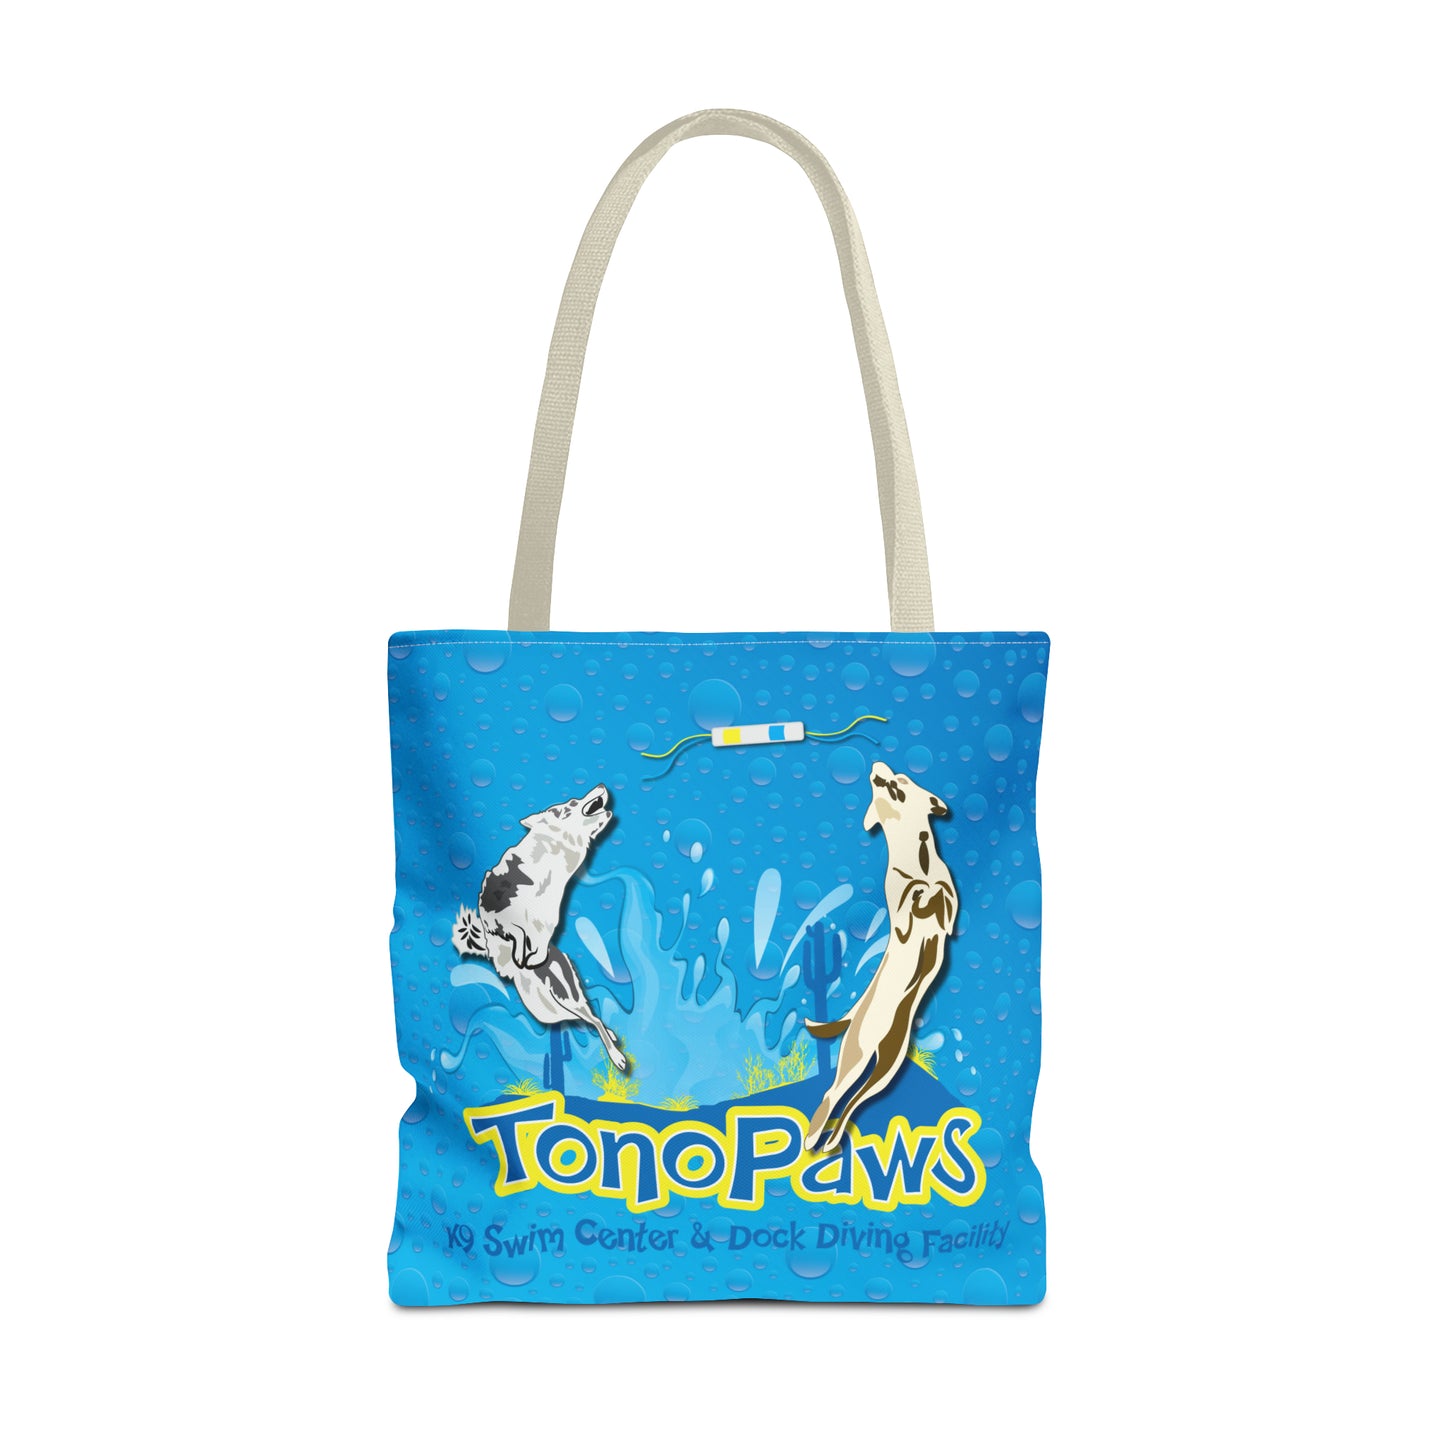 2 TONOPAWS Tote Bag